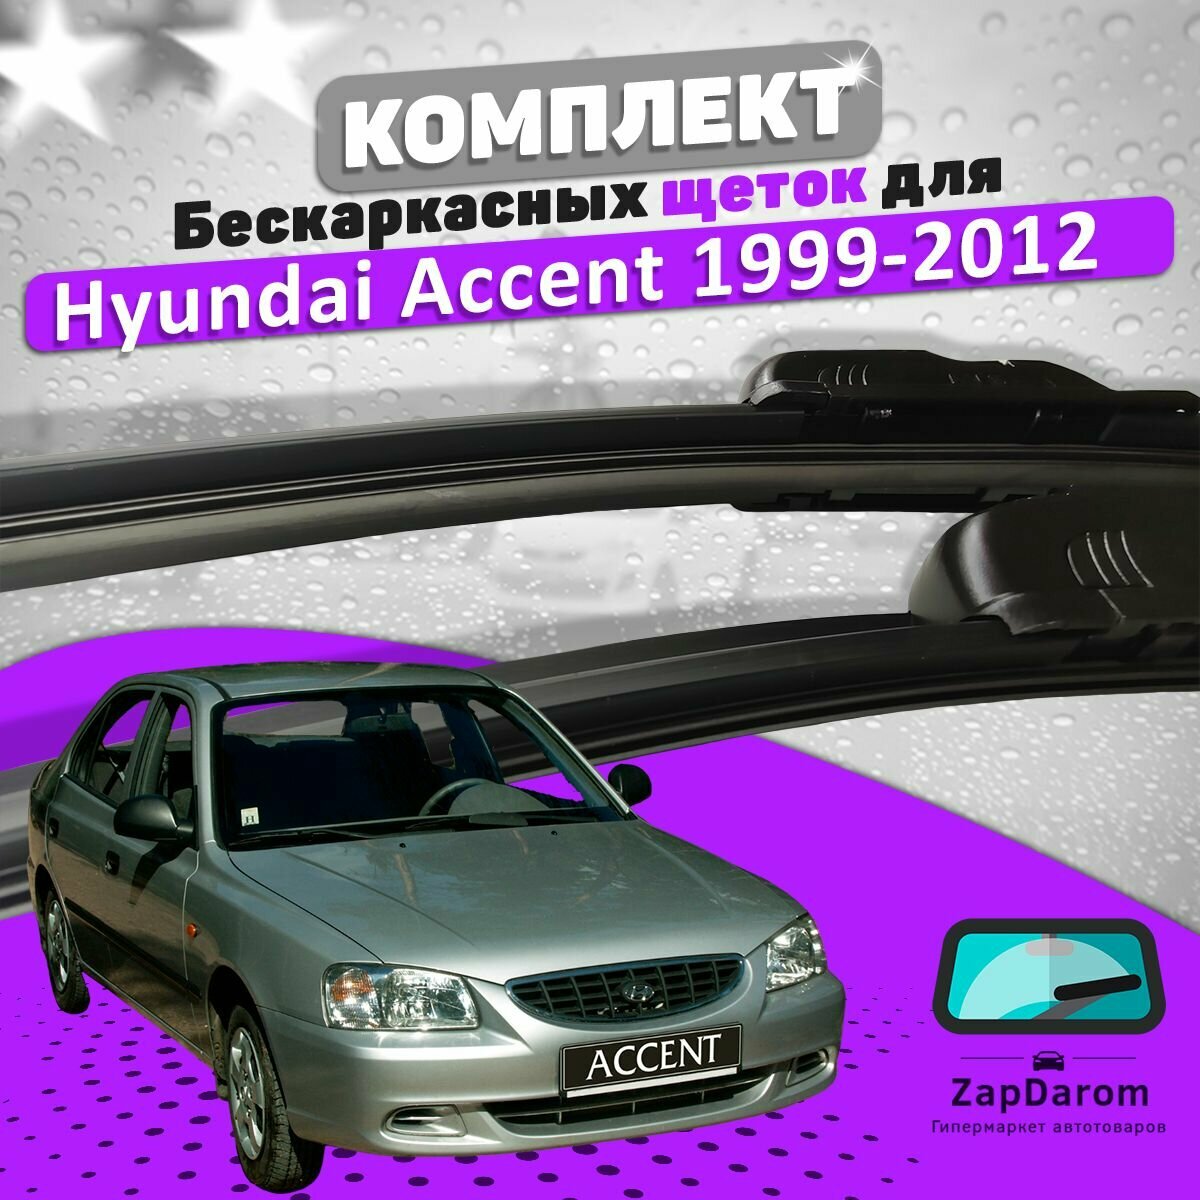 Комплект щеток стеклоочистителя LAVR для Hyundai Accent Тагаз 1999-2012 (500 и 450 мм) / Дворники Хундай Акцент